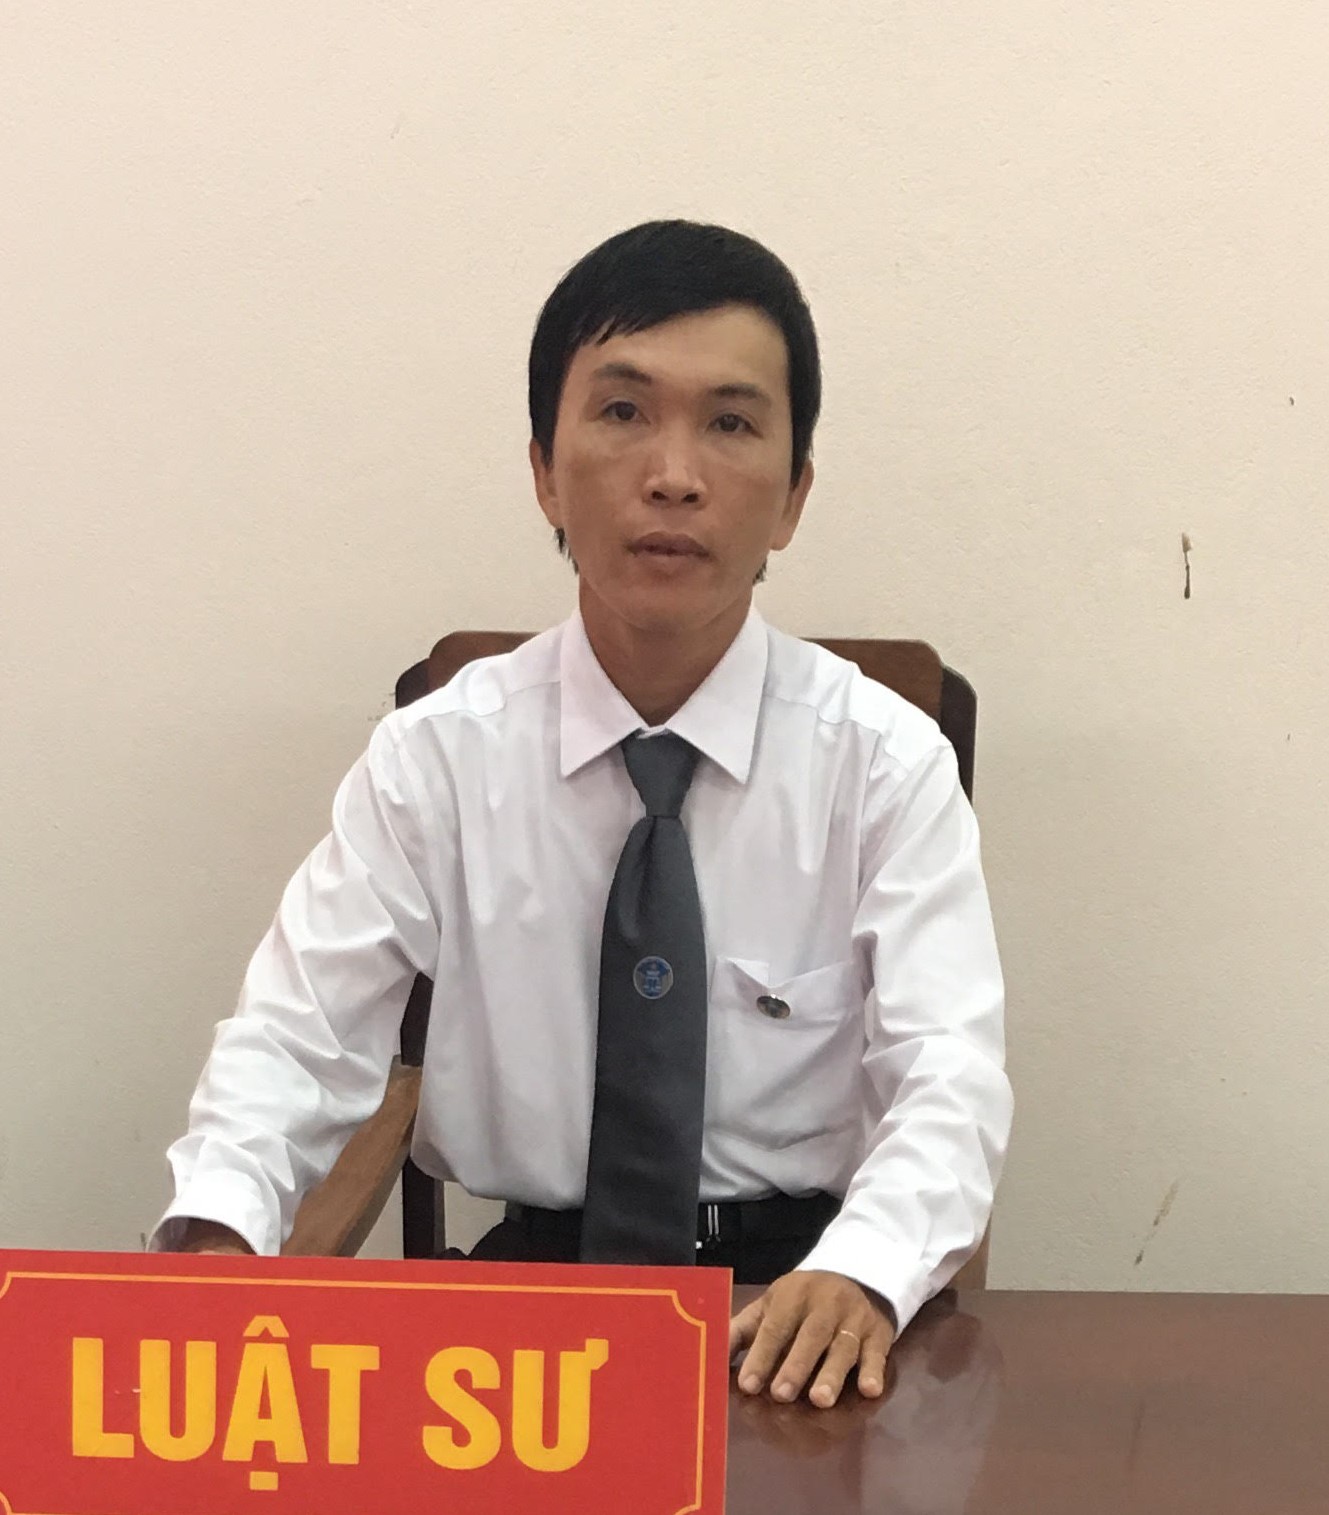 Luật sư Nguyễn Trường Thọ